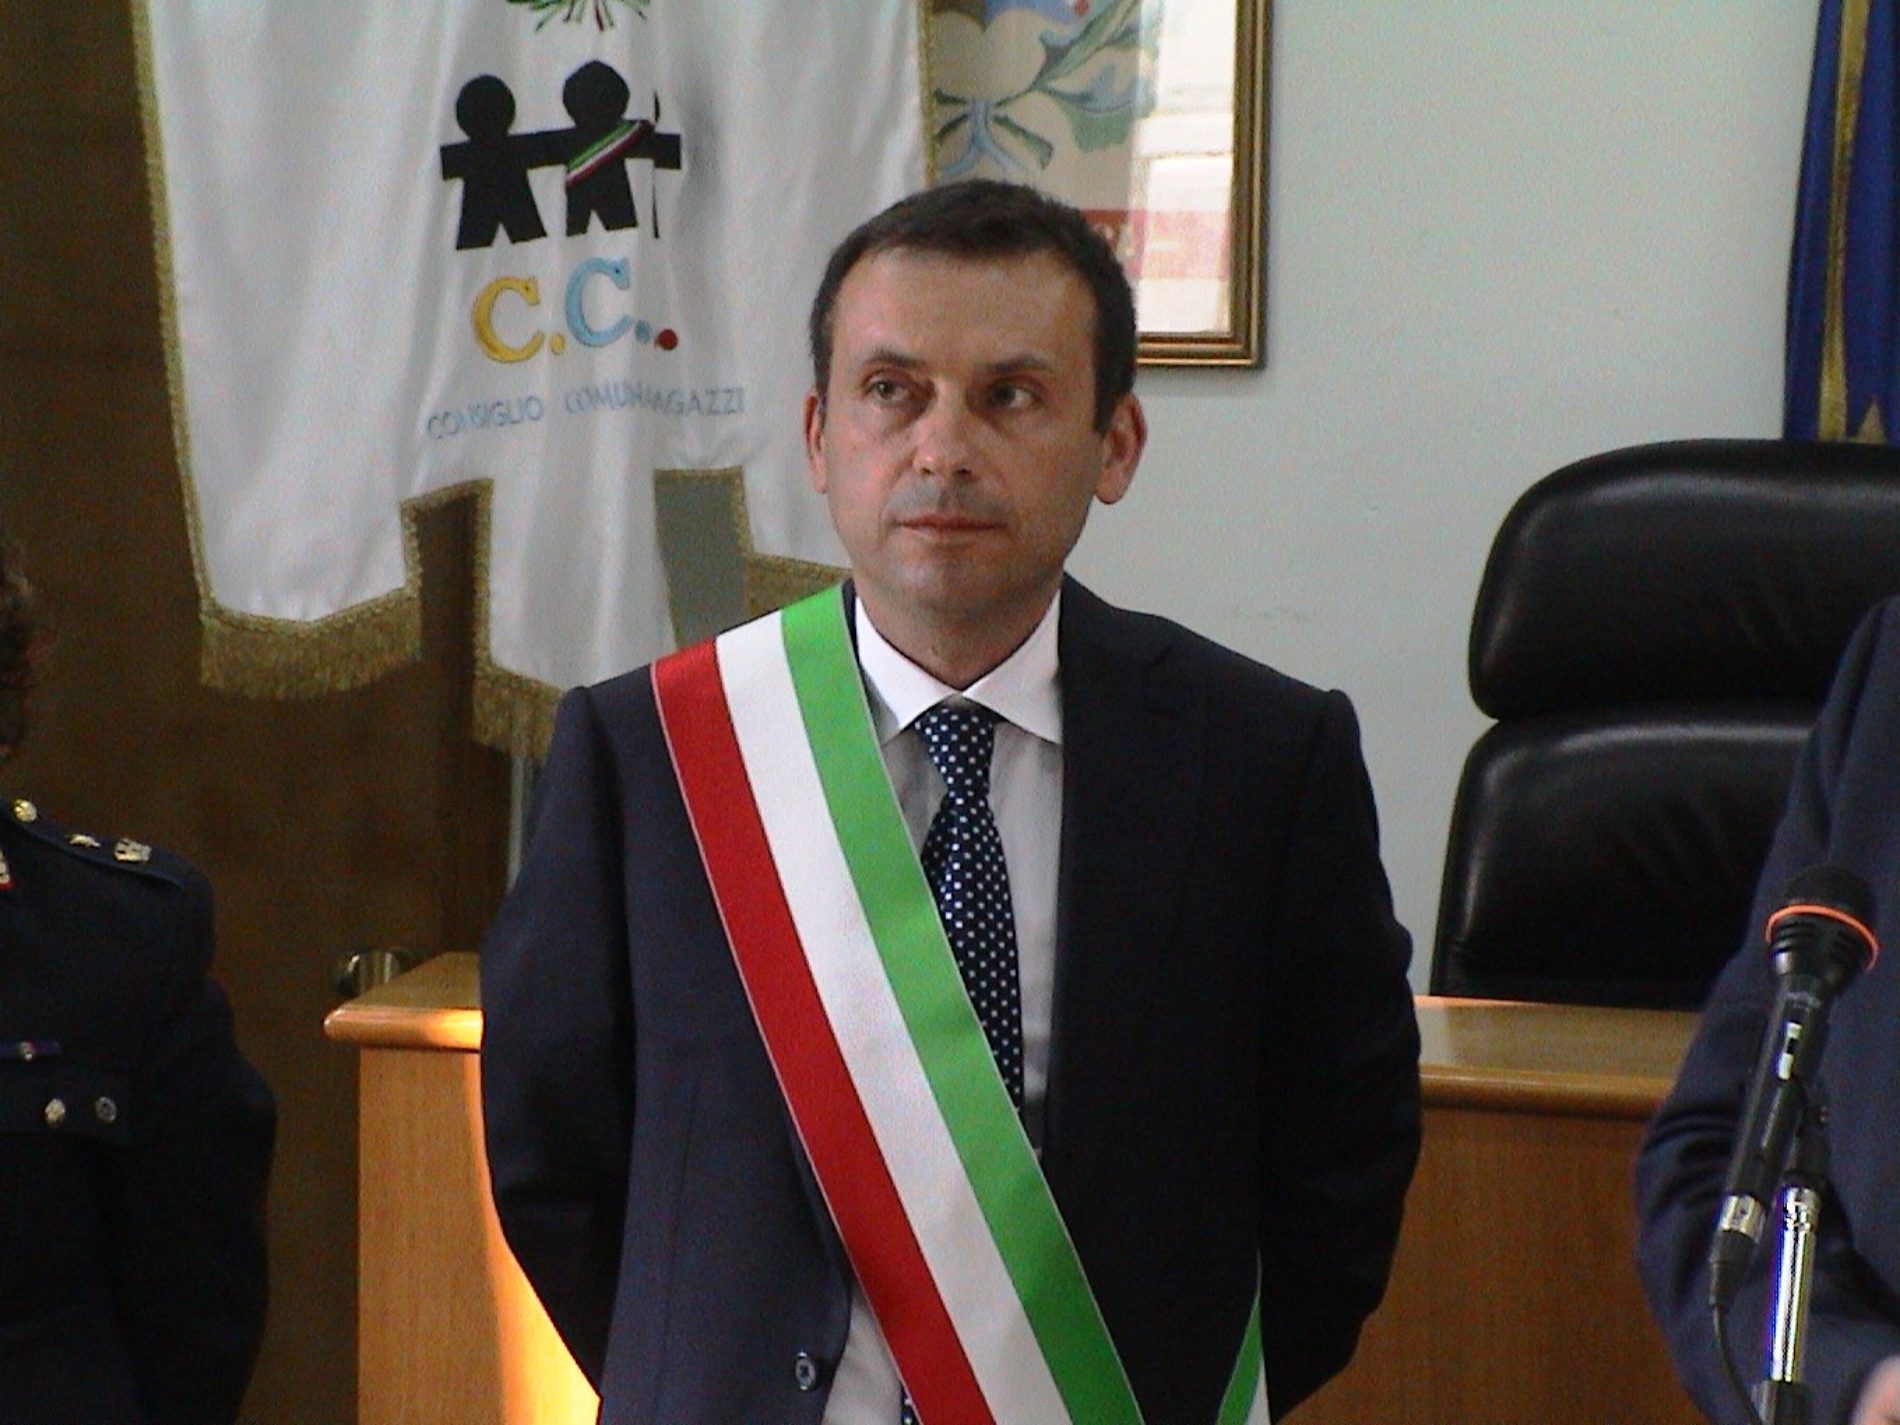 BARRAFRANCA. Misure di contenimento del Covid 19. Ulteriore ordinanza del sindaco Fabio Accardi.